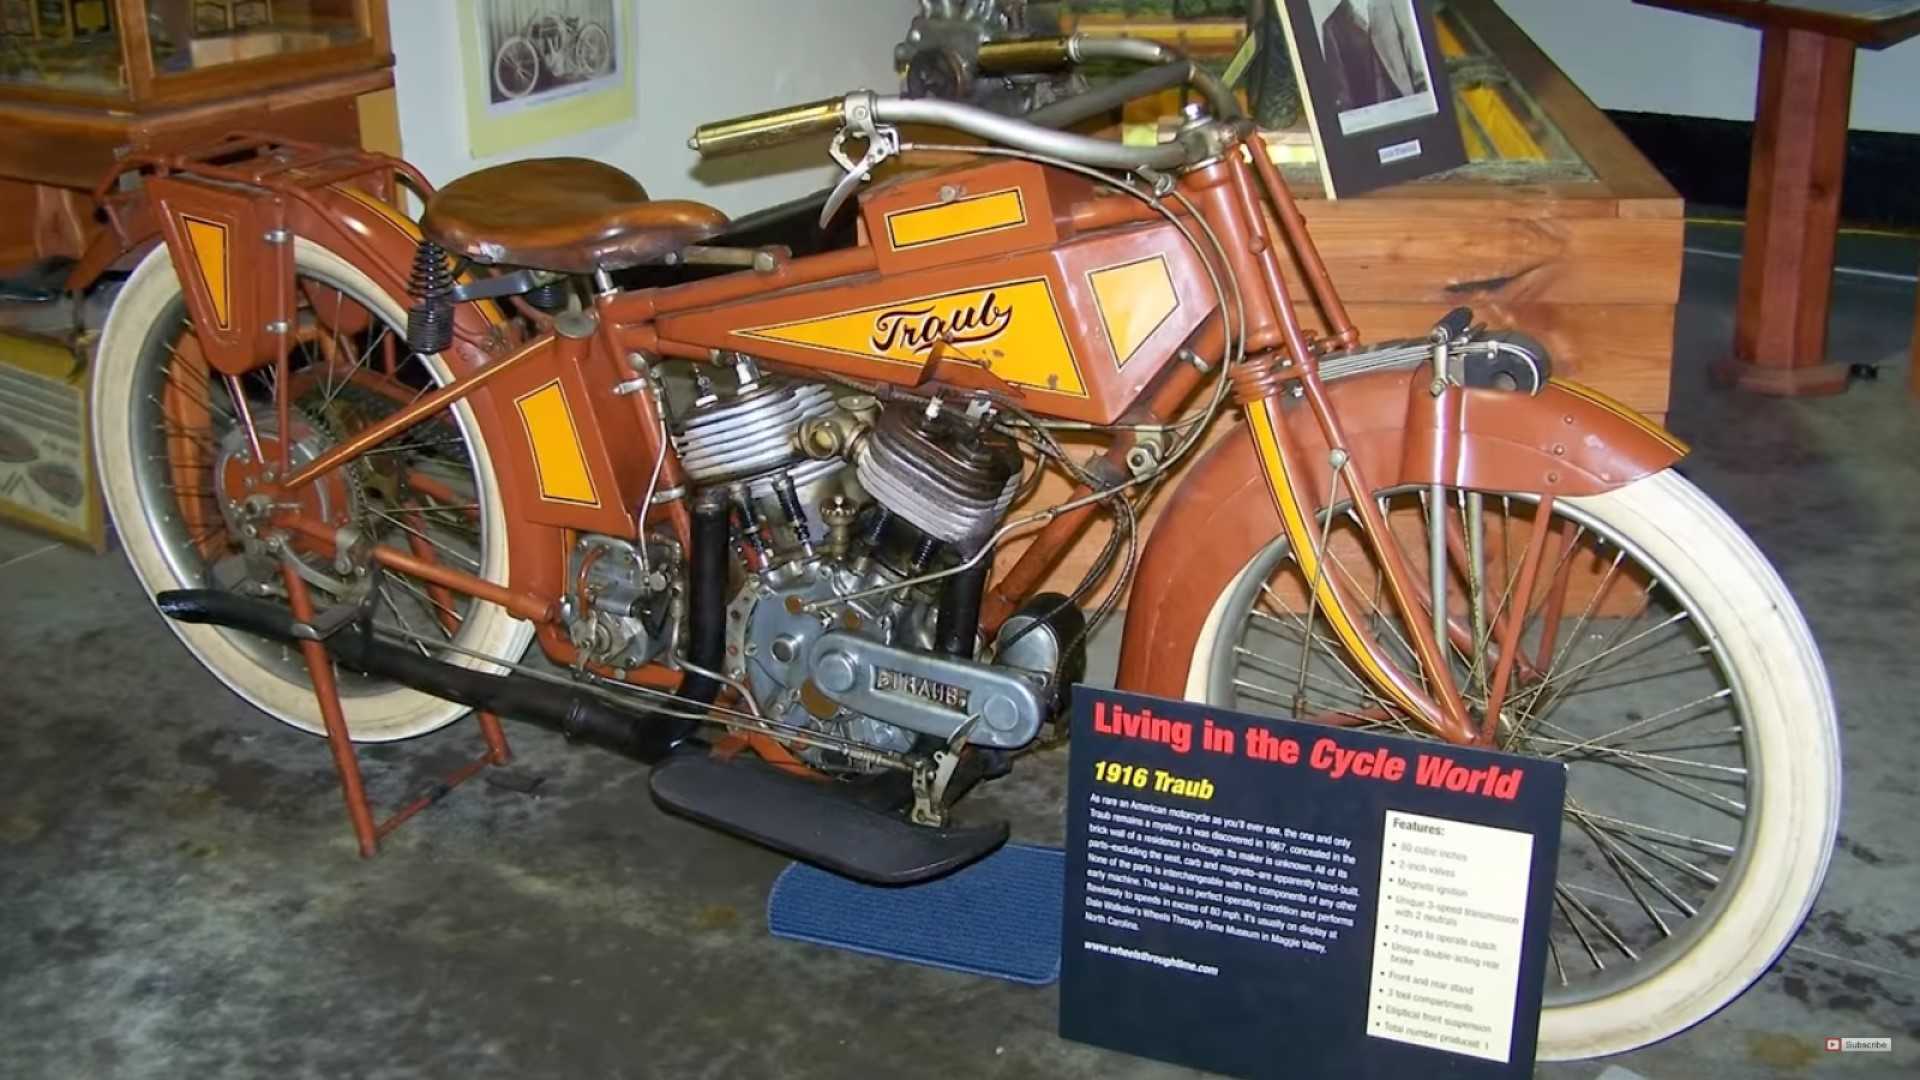 Traub摩托车的视图，这台机器估计是1916年制造的，是至今仍未解开的独一无二的谜团